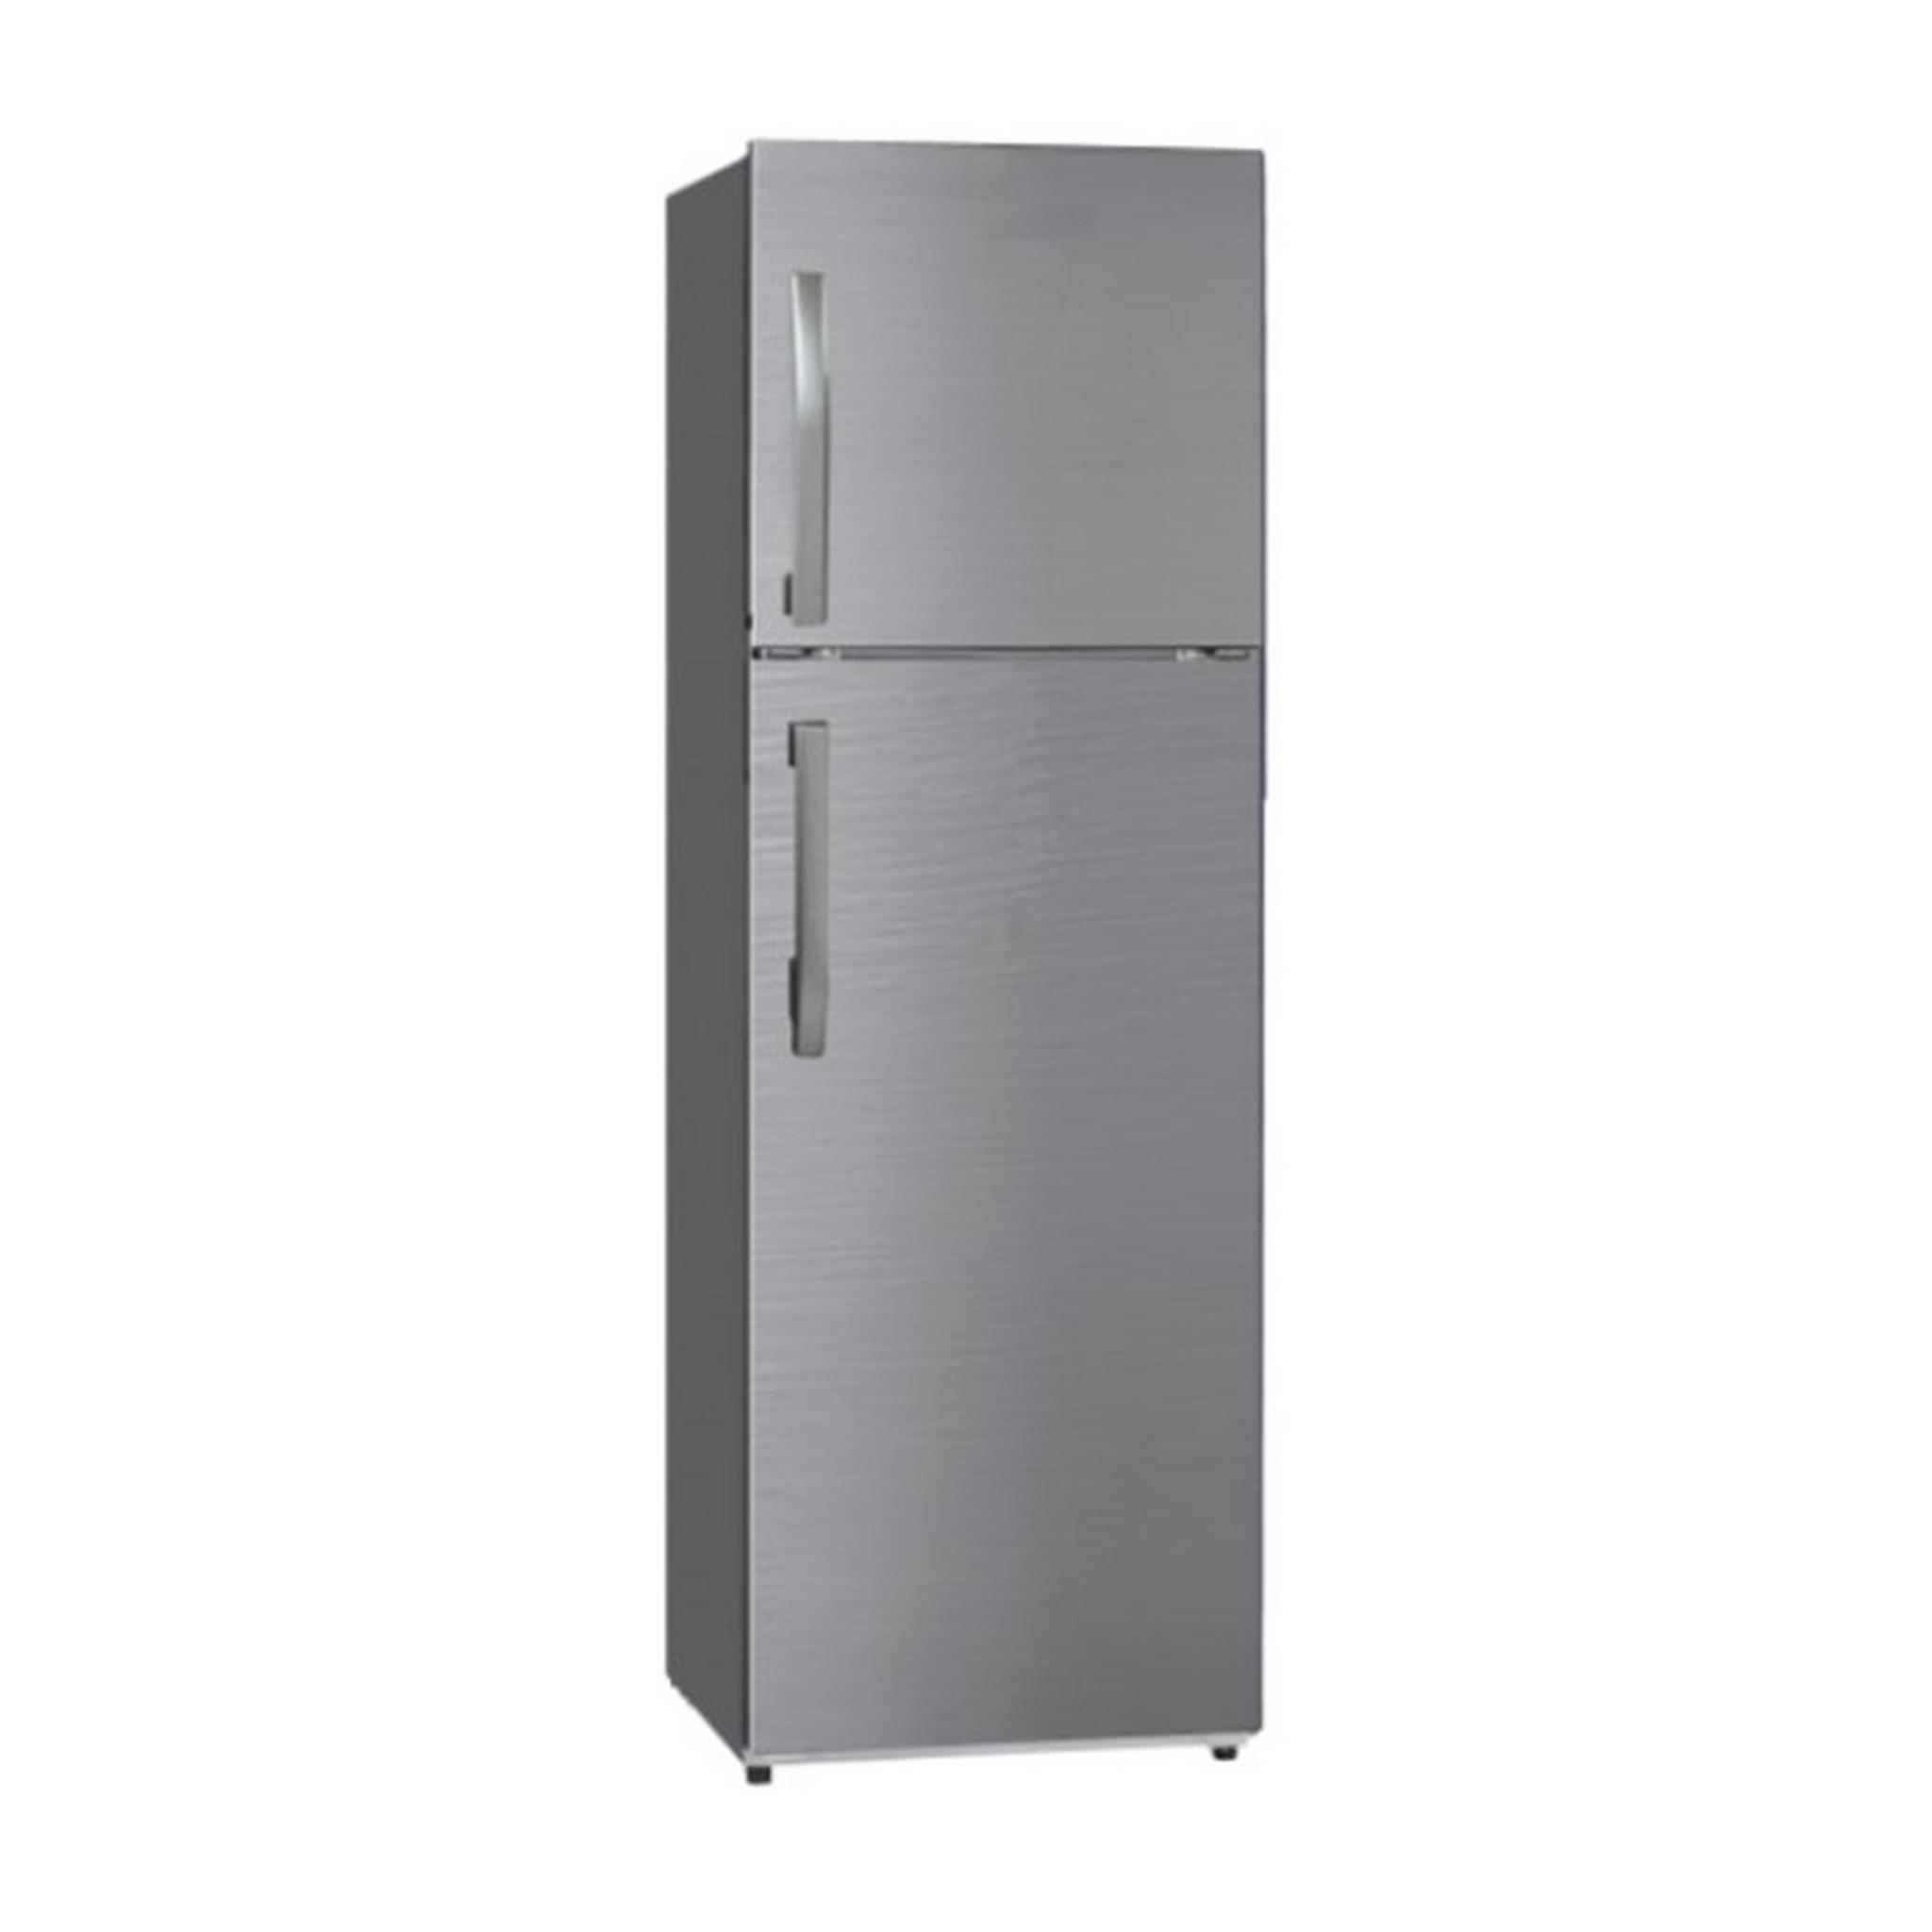 Wansa Gas Cooker + Wansa Top Freezer Refrigerator + Wansa Front Load Washing Machine